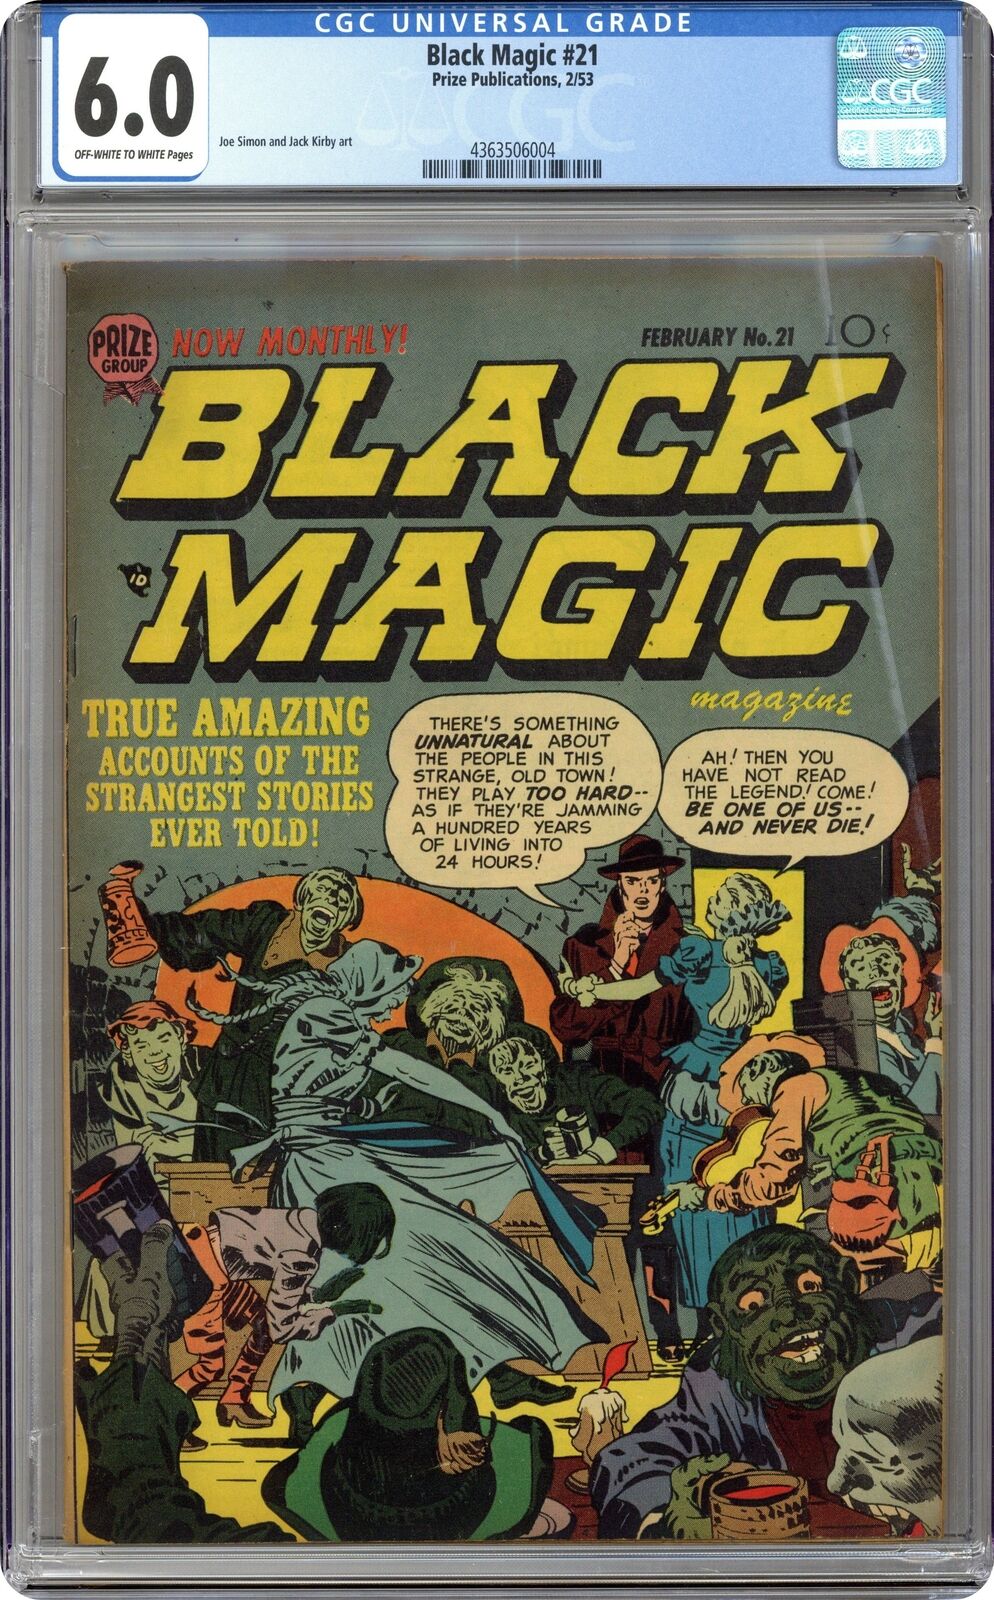 Black Magic Vol. 3 #3 CGC 6.0 1953 4363506004